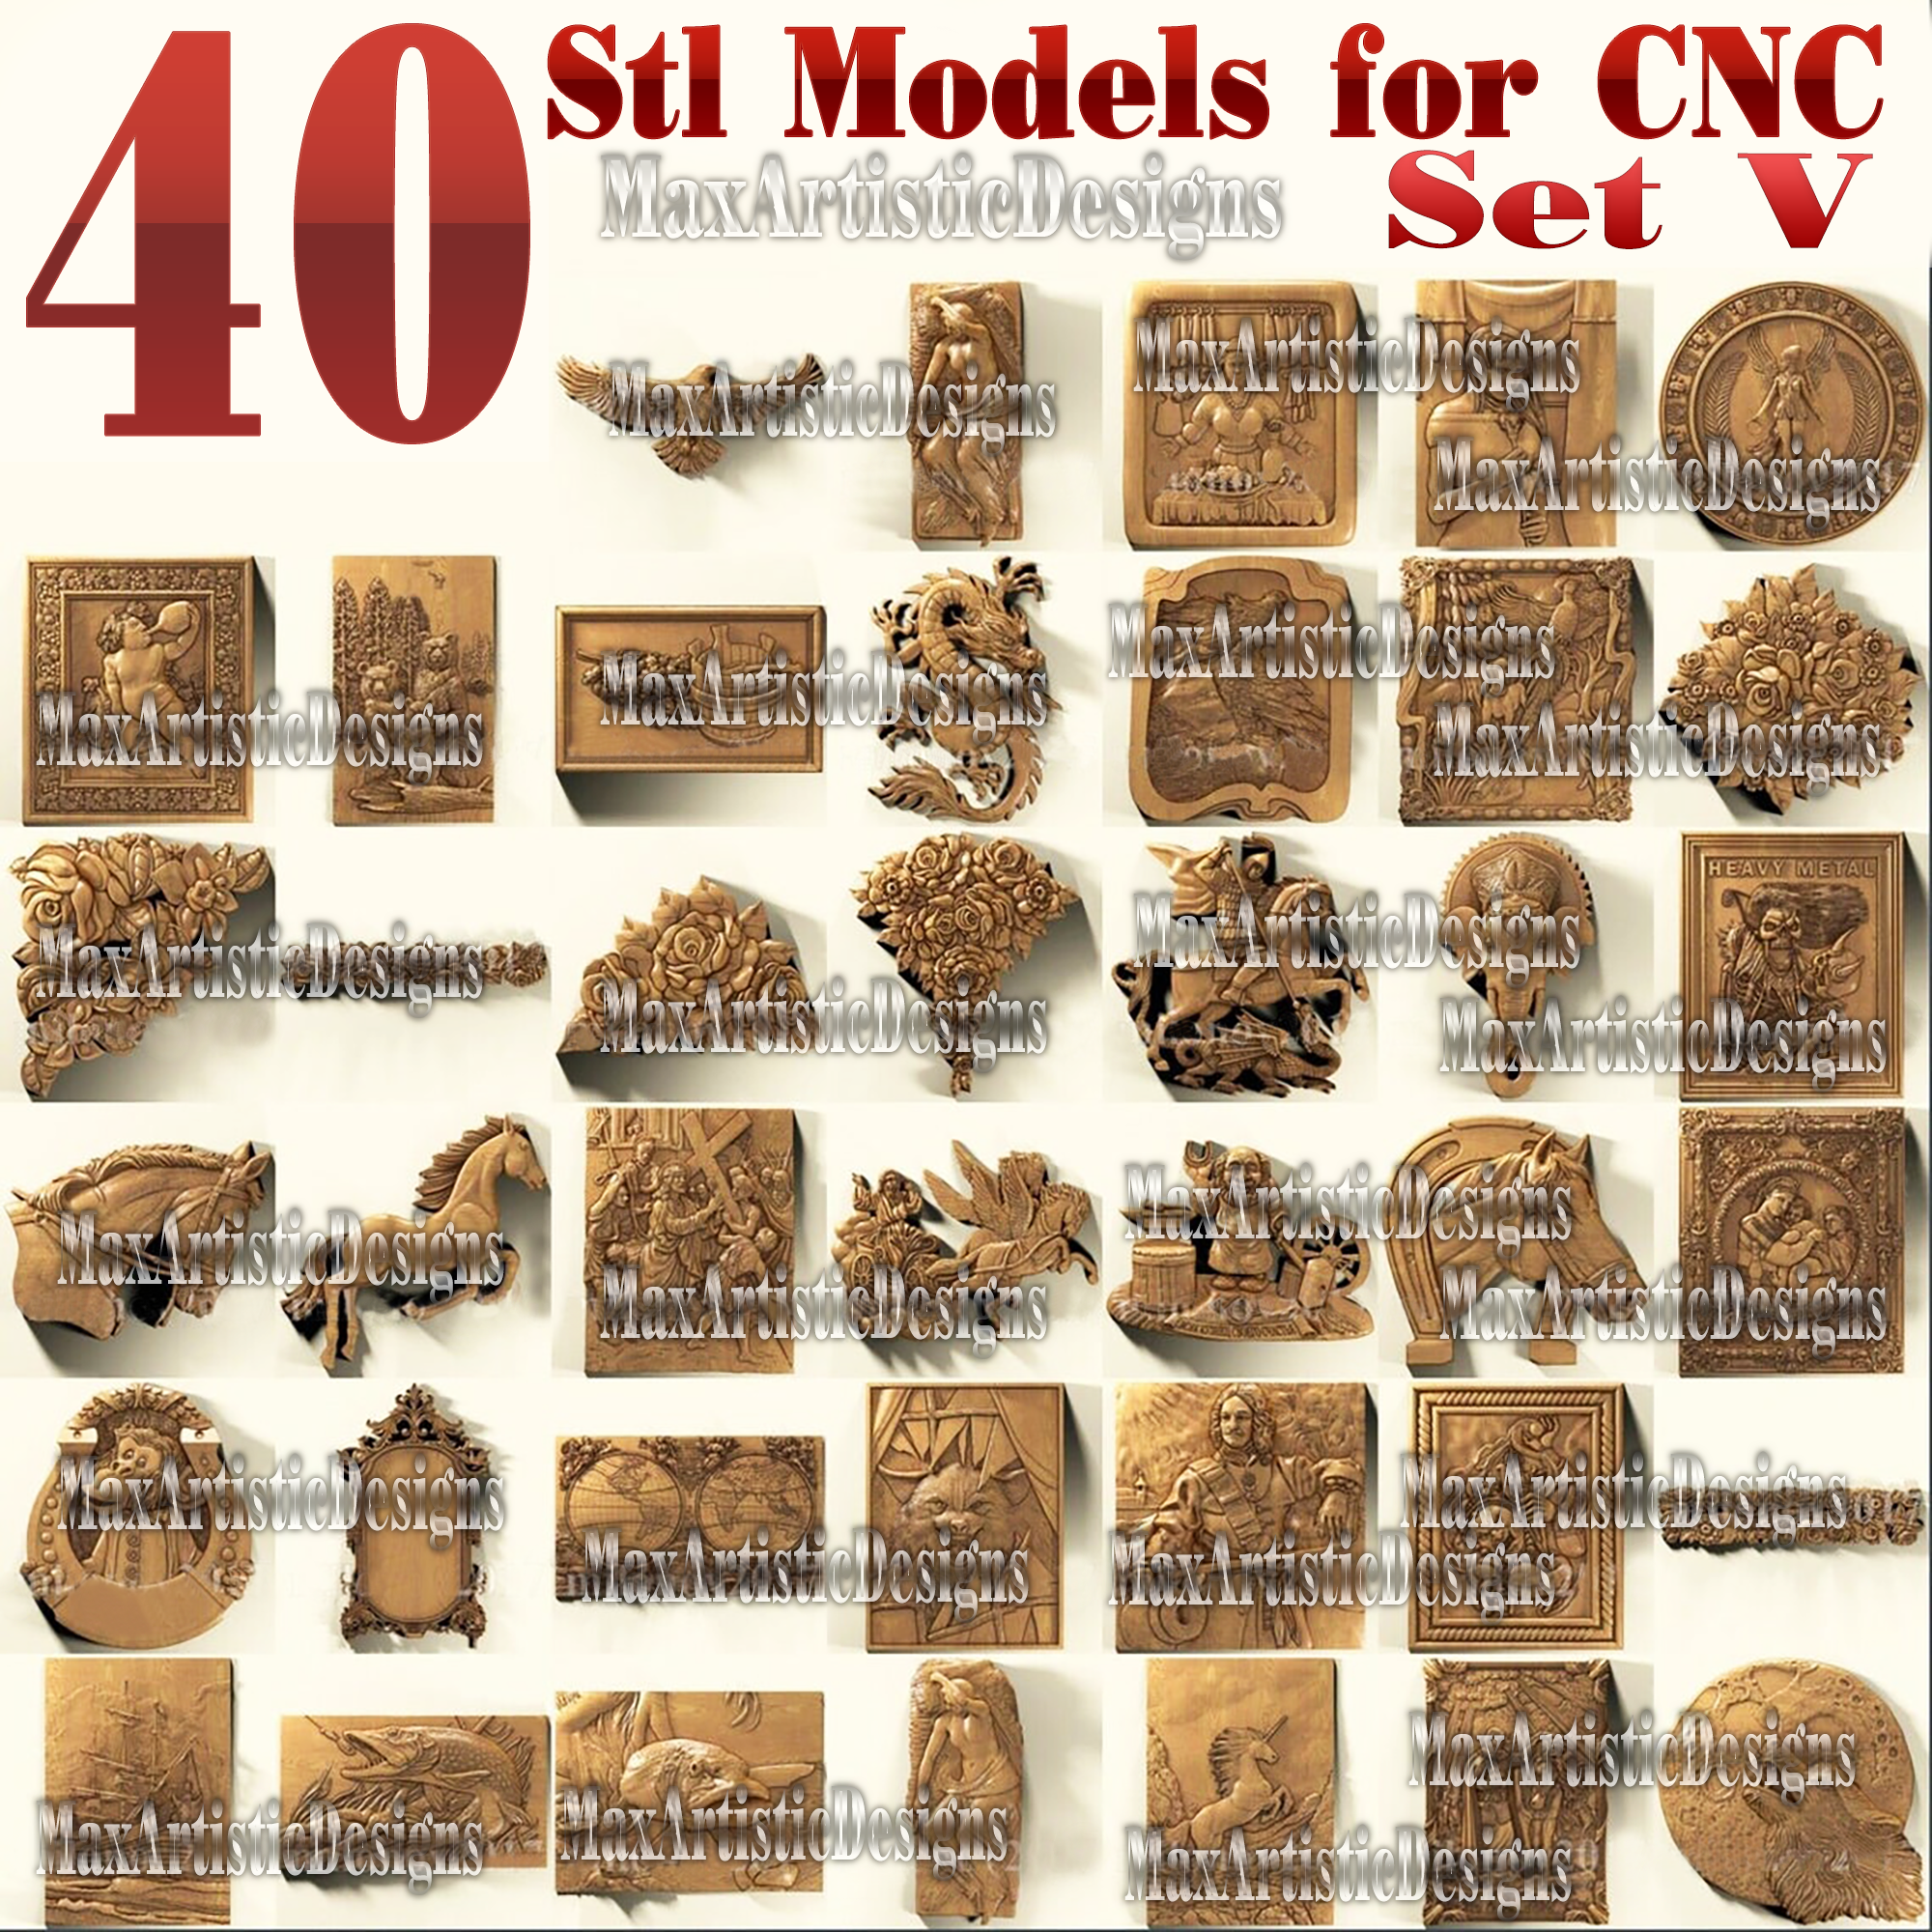 41 pezzi 3d stl modelli bassorilievo in metallo per router di cnc artcam aspire set v download